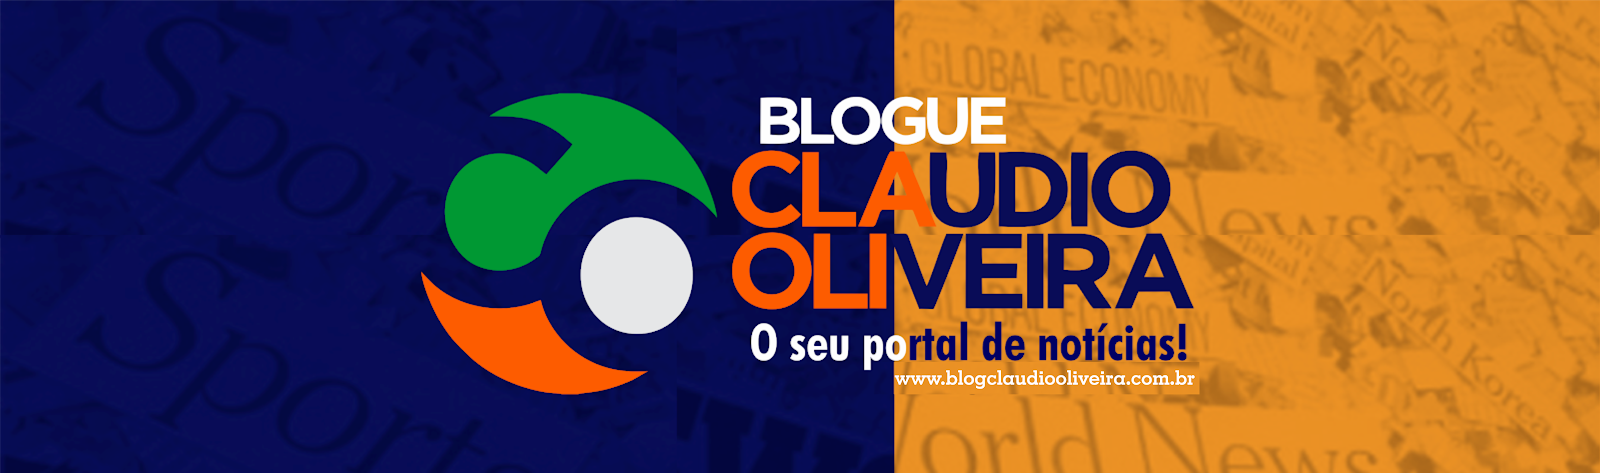 Blogue Claudio Oliveira